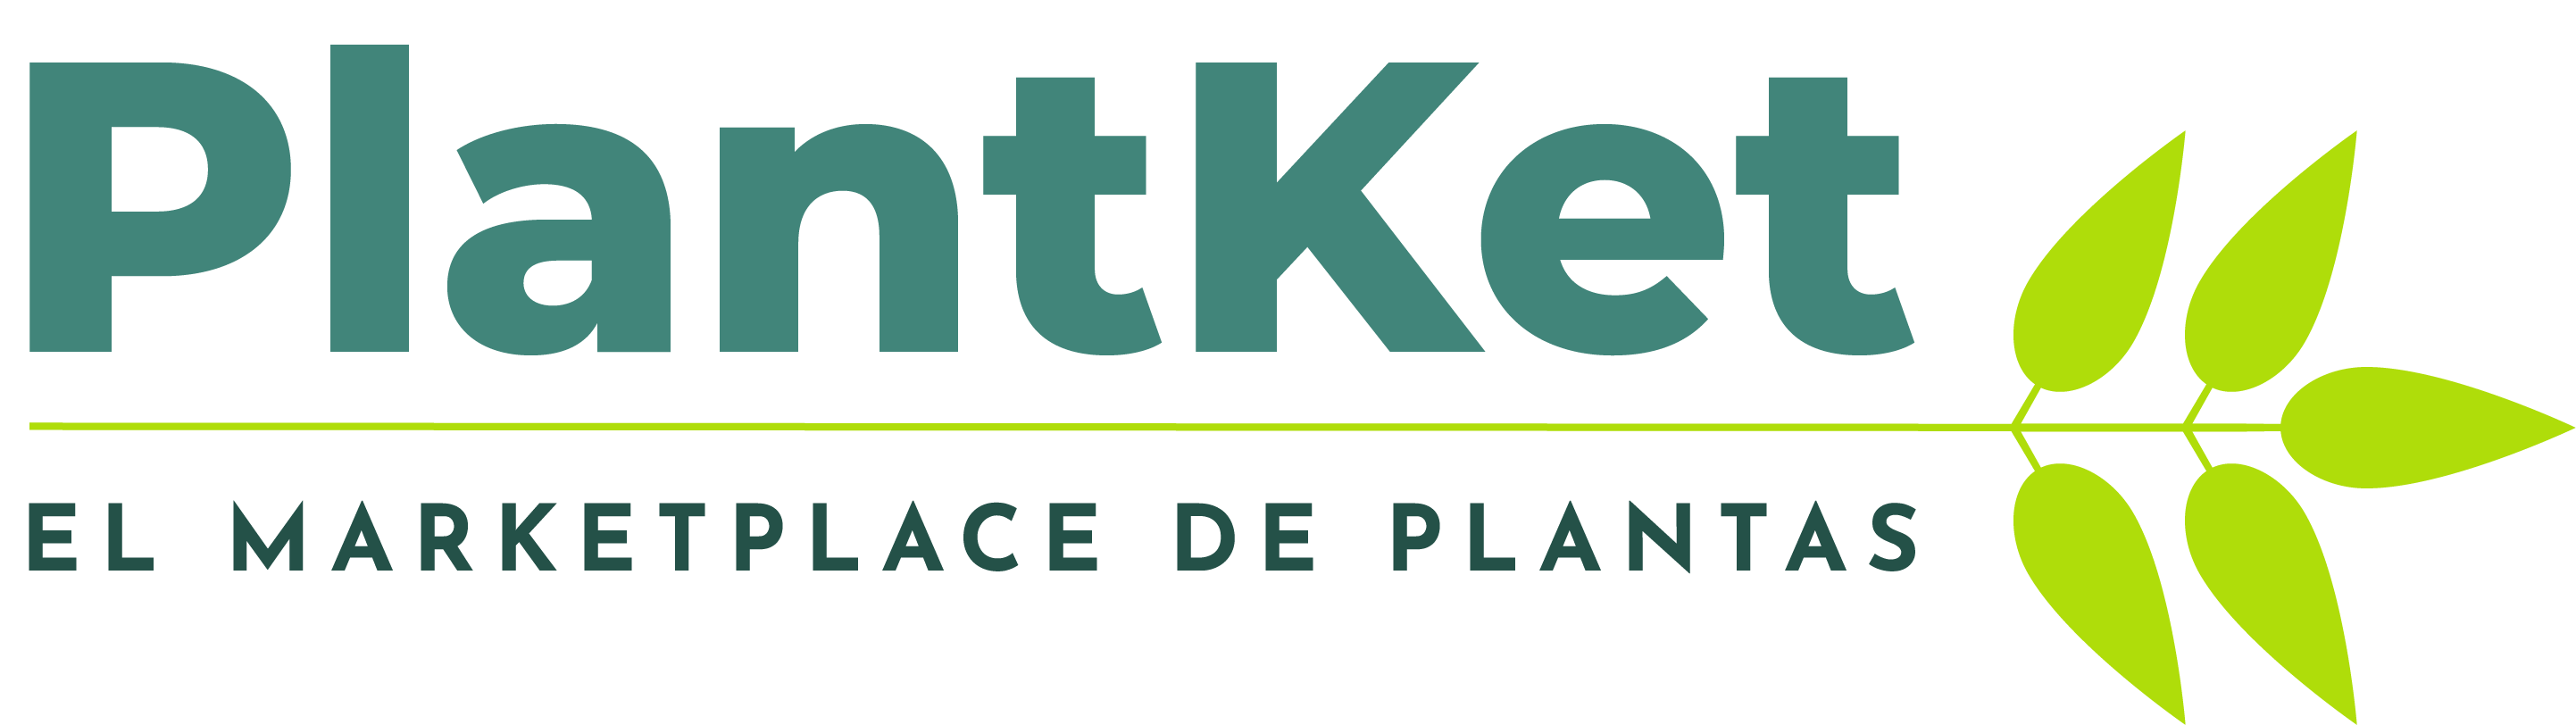 Plantket Marketplace